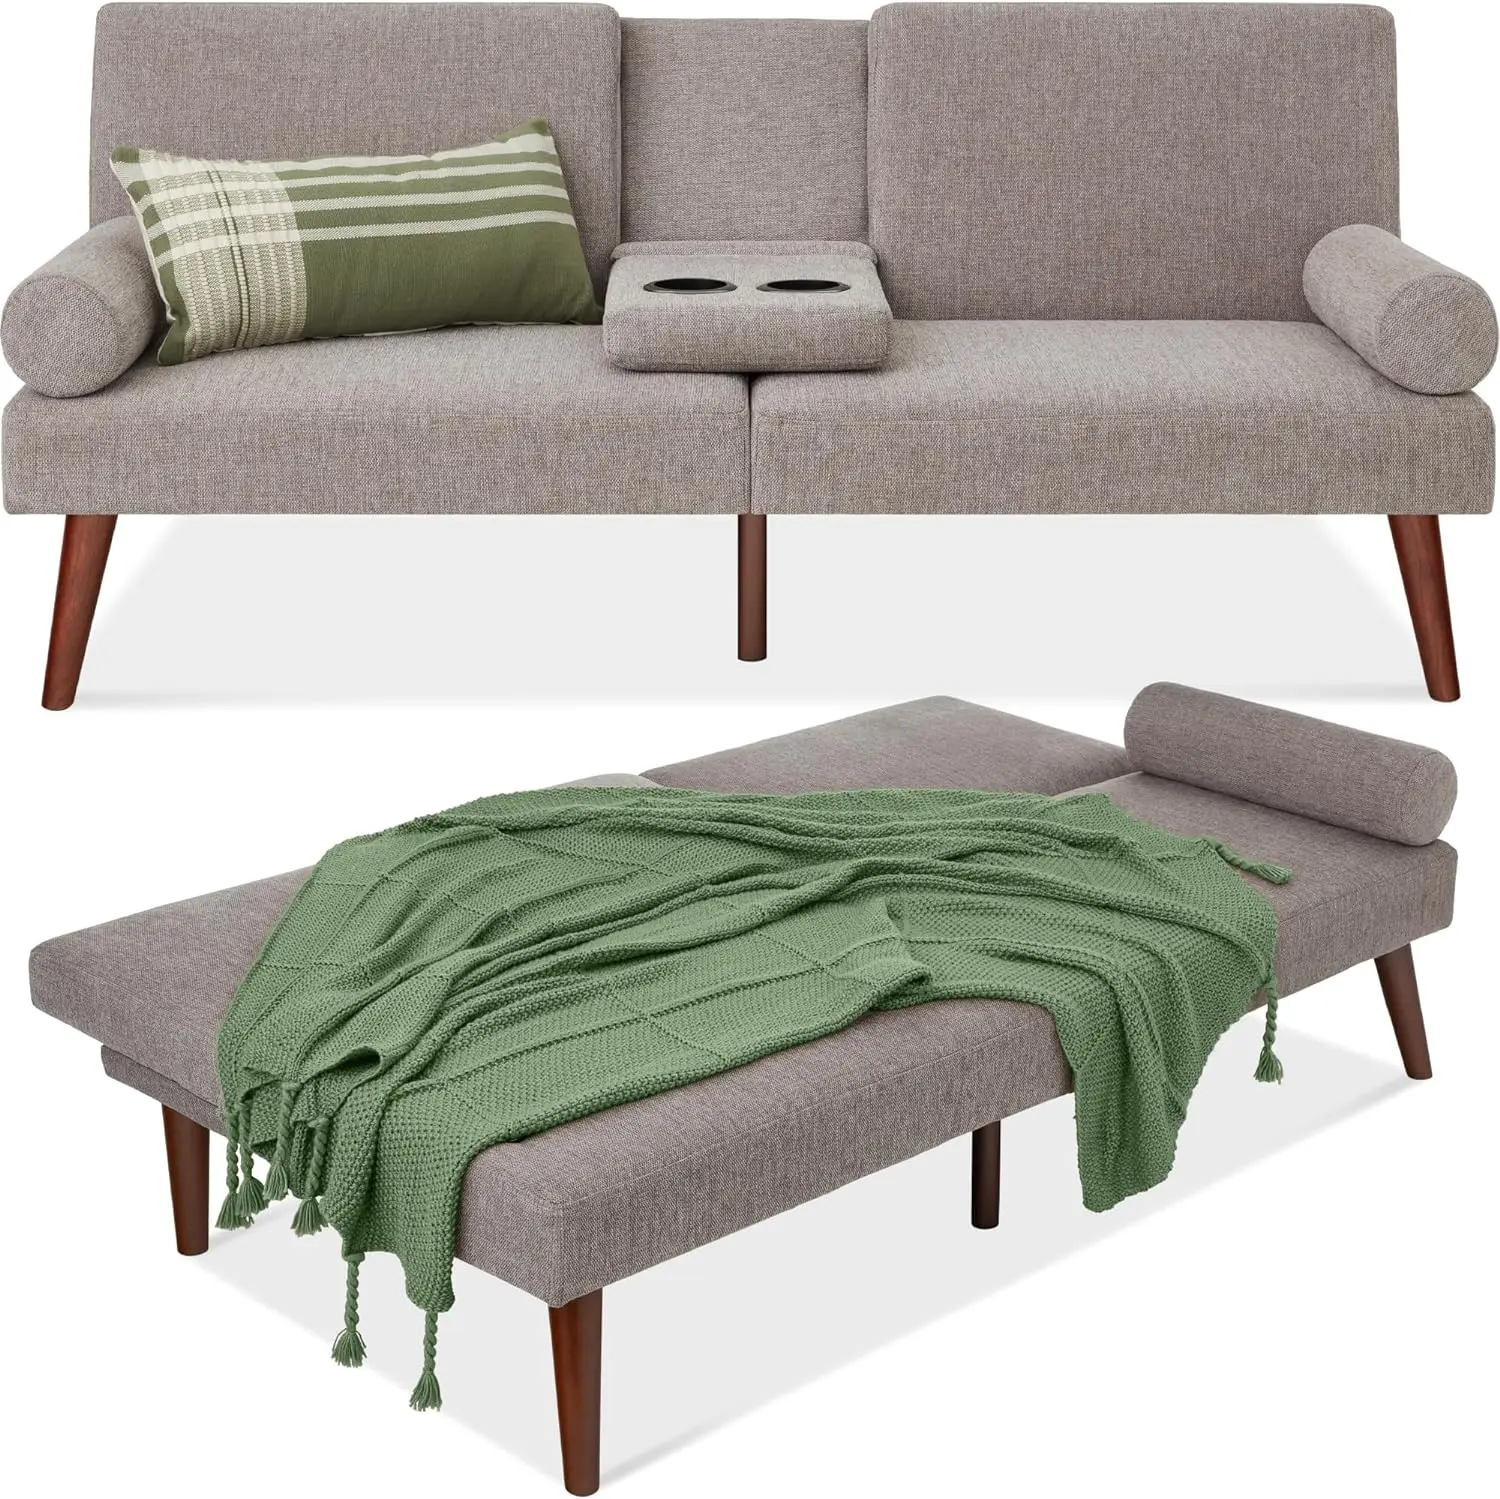 Современный футон среднего века с мягкой обивкой, раскладной диван-кровать, маленький диван с закругленными подлокотниками, 2 держателя для чашек